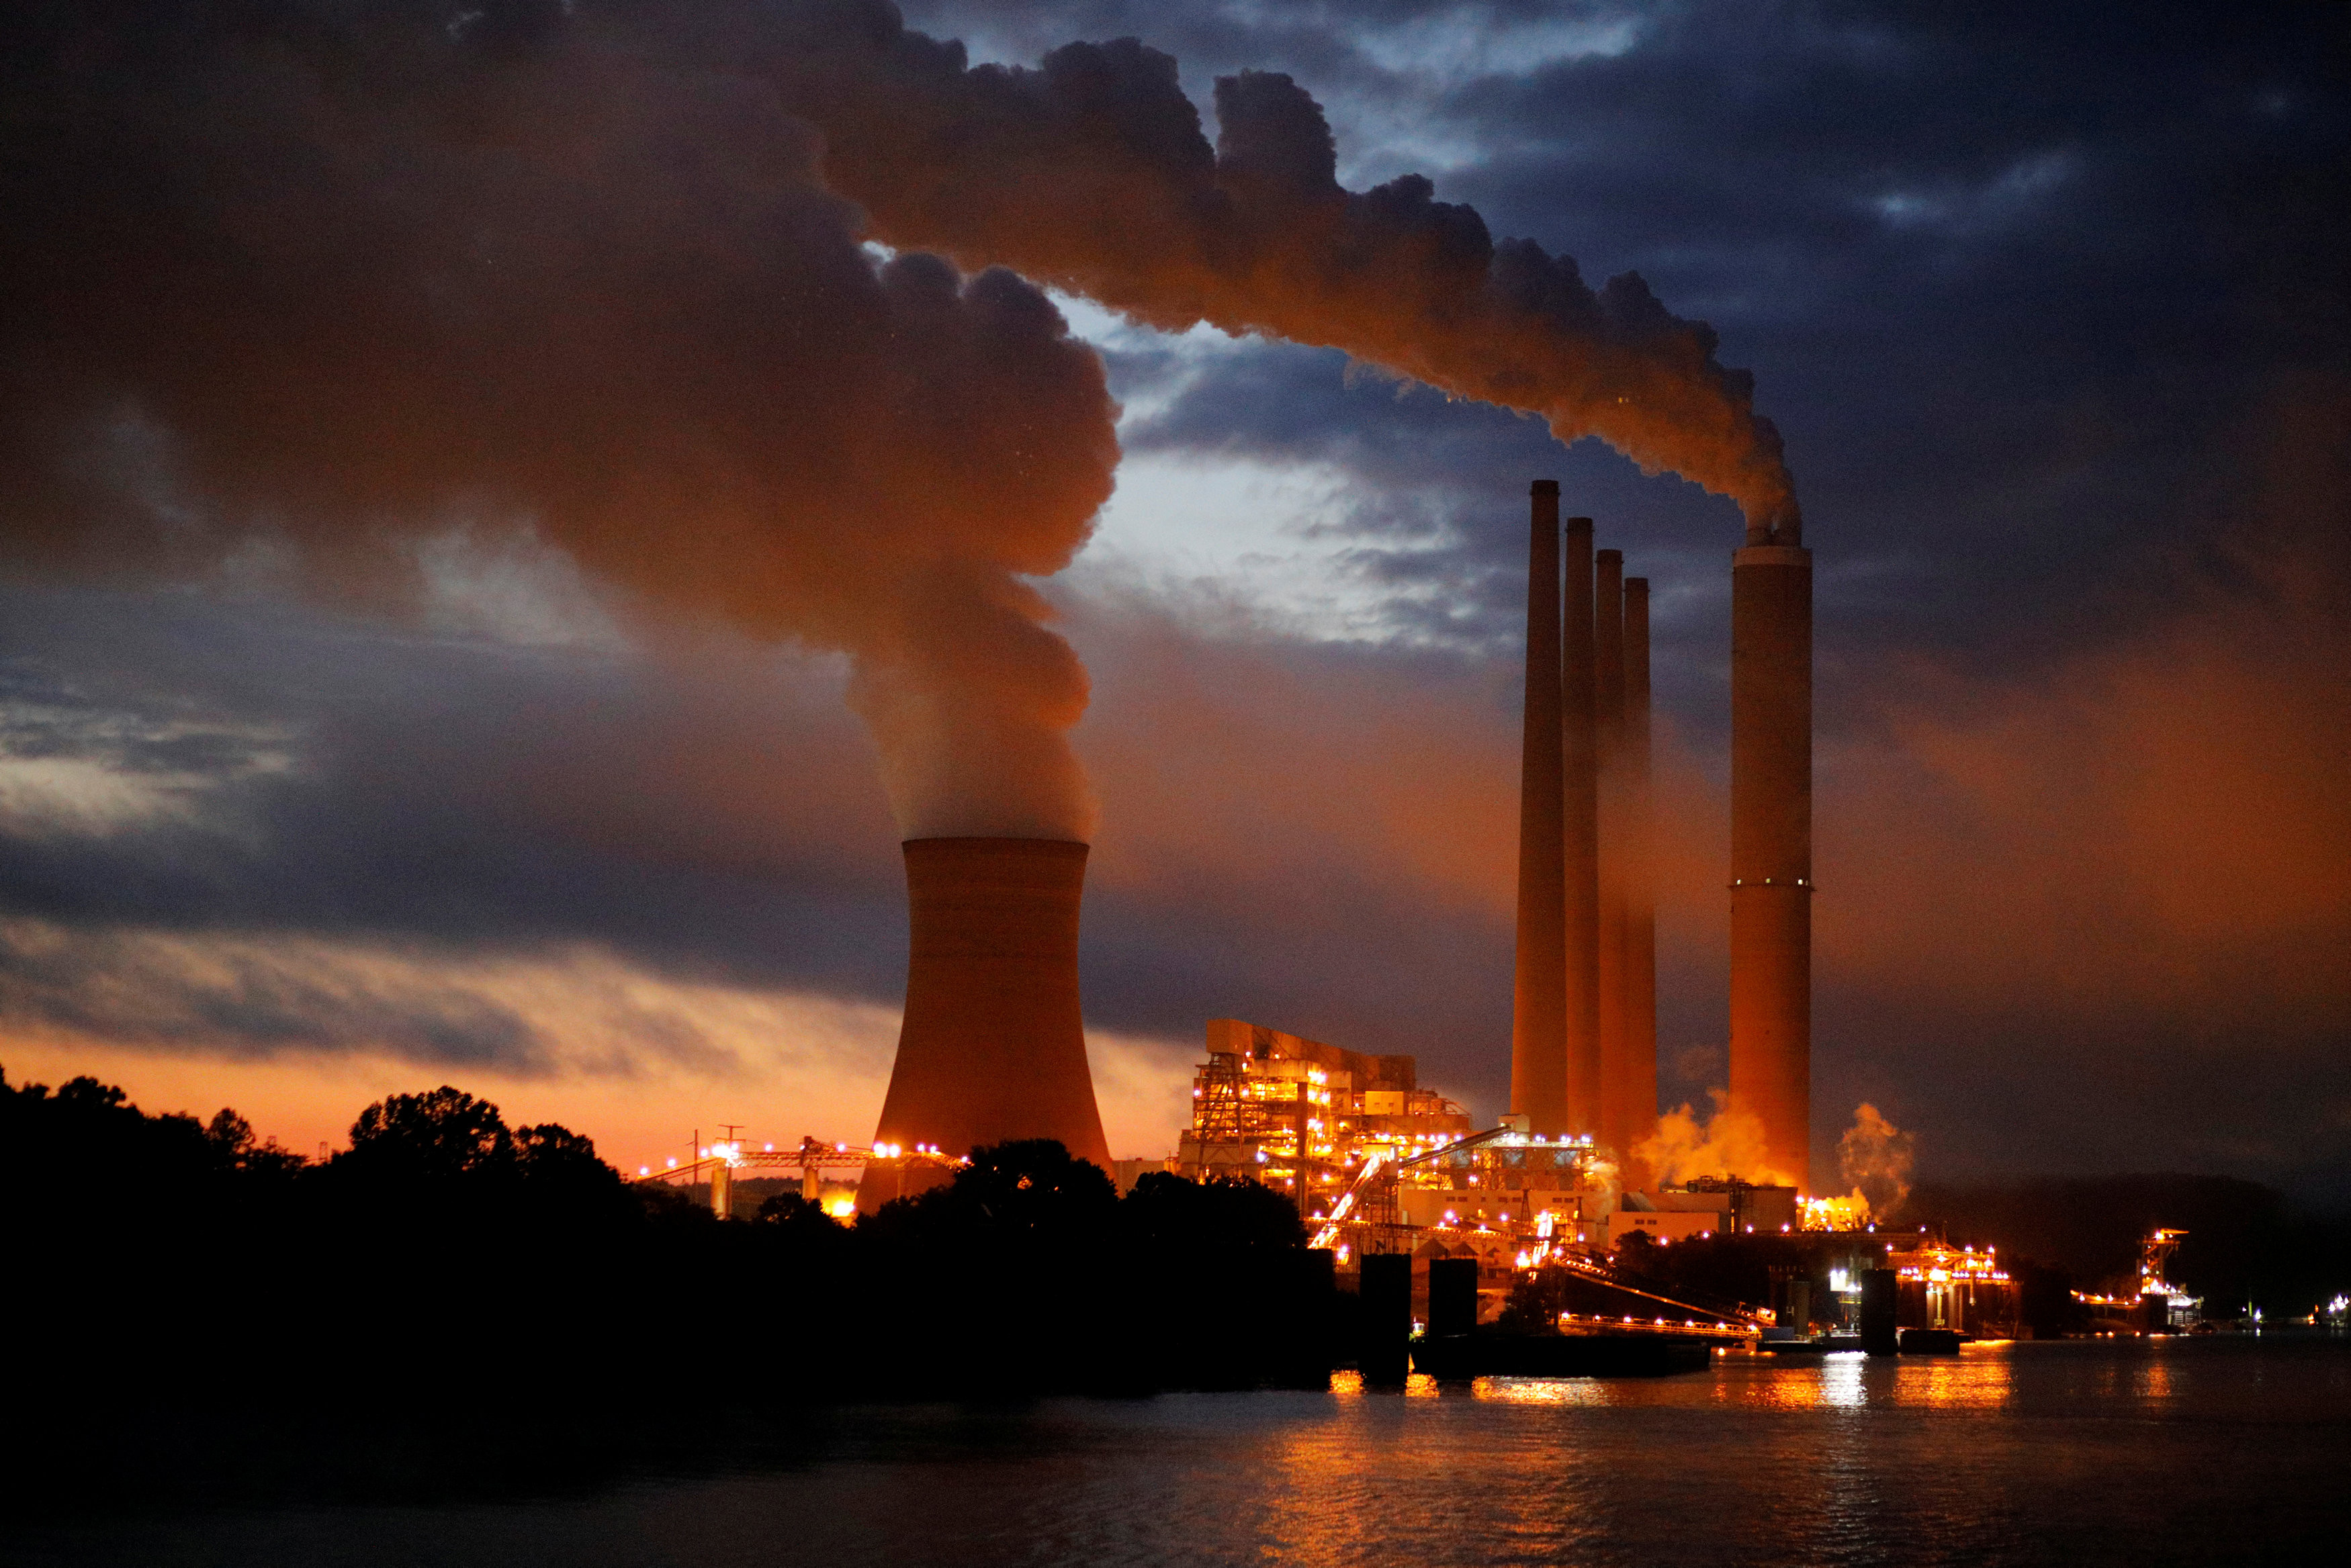 核電,氣候峰會,COP26,巴黎協定,溫室效應,2030,南非,電網,氣候變遷因應法,非核家園,核四商轉,2050